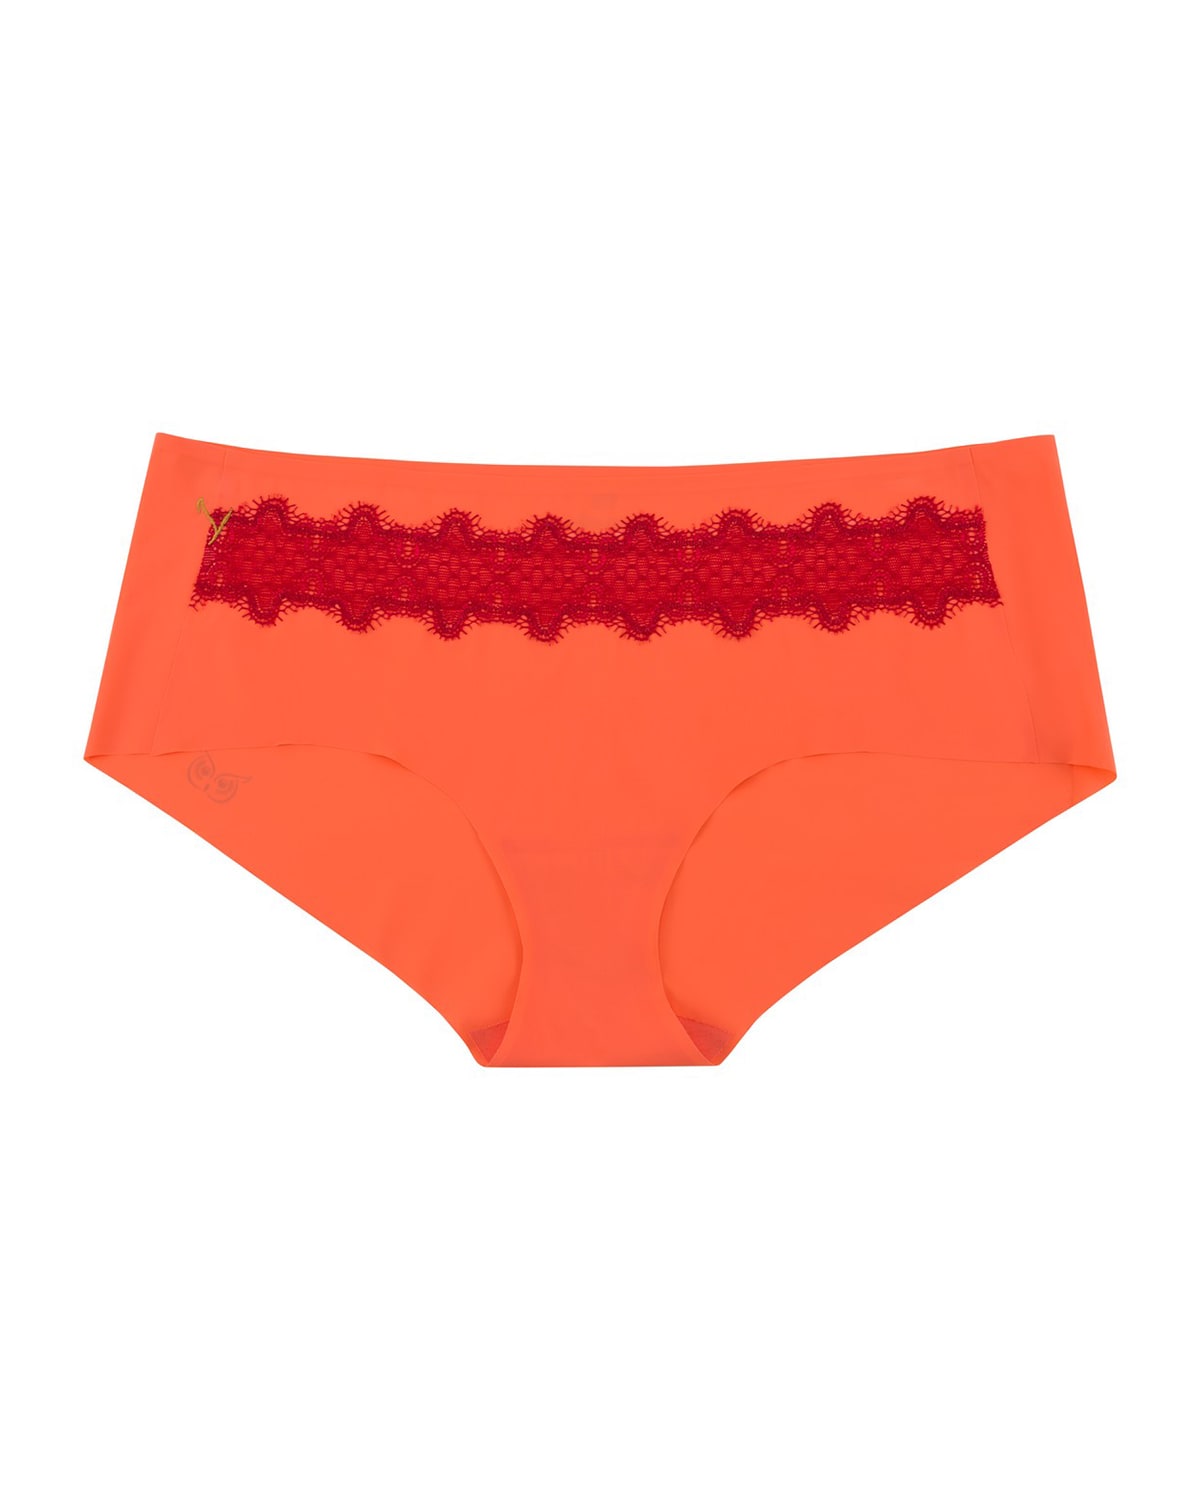 Uwila Warrior Happy Seam Brief Panties In Coral/red